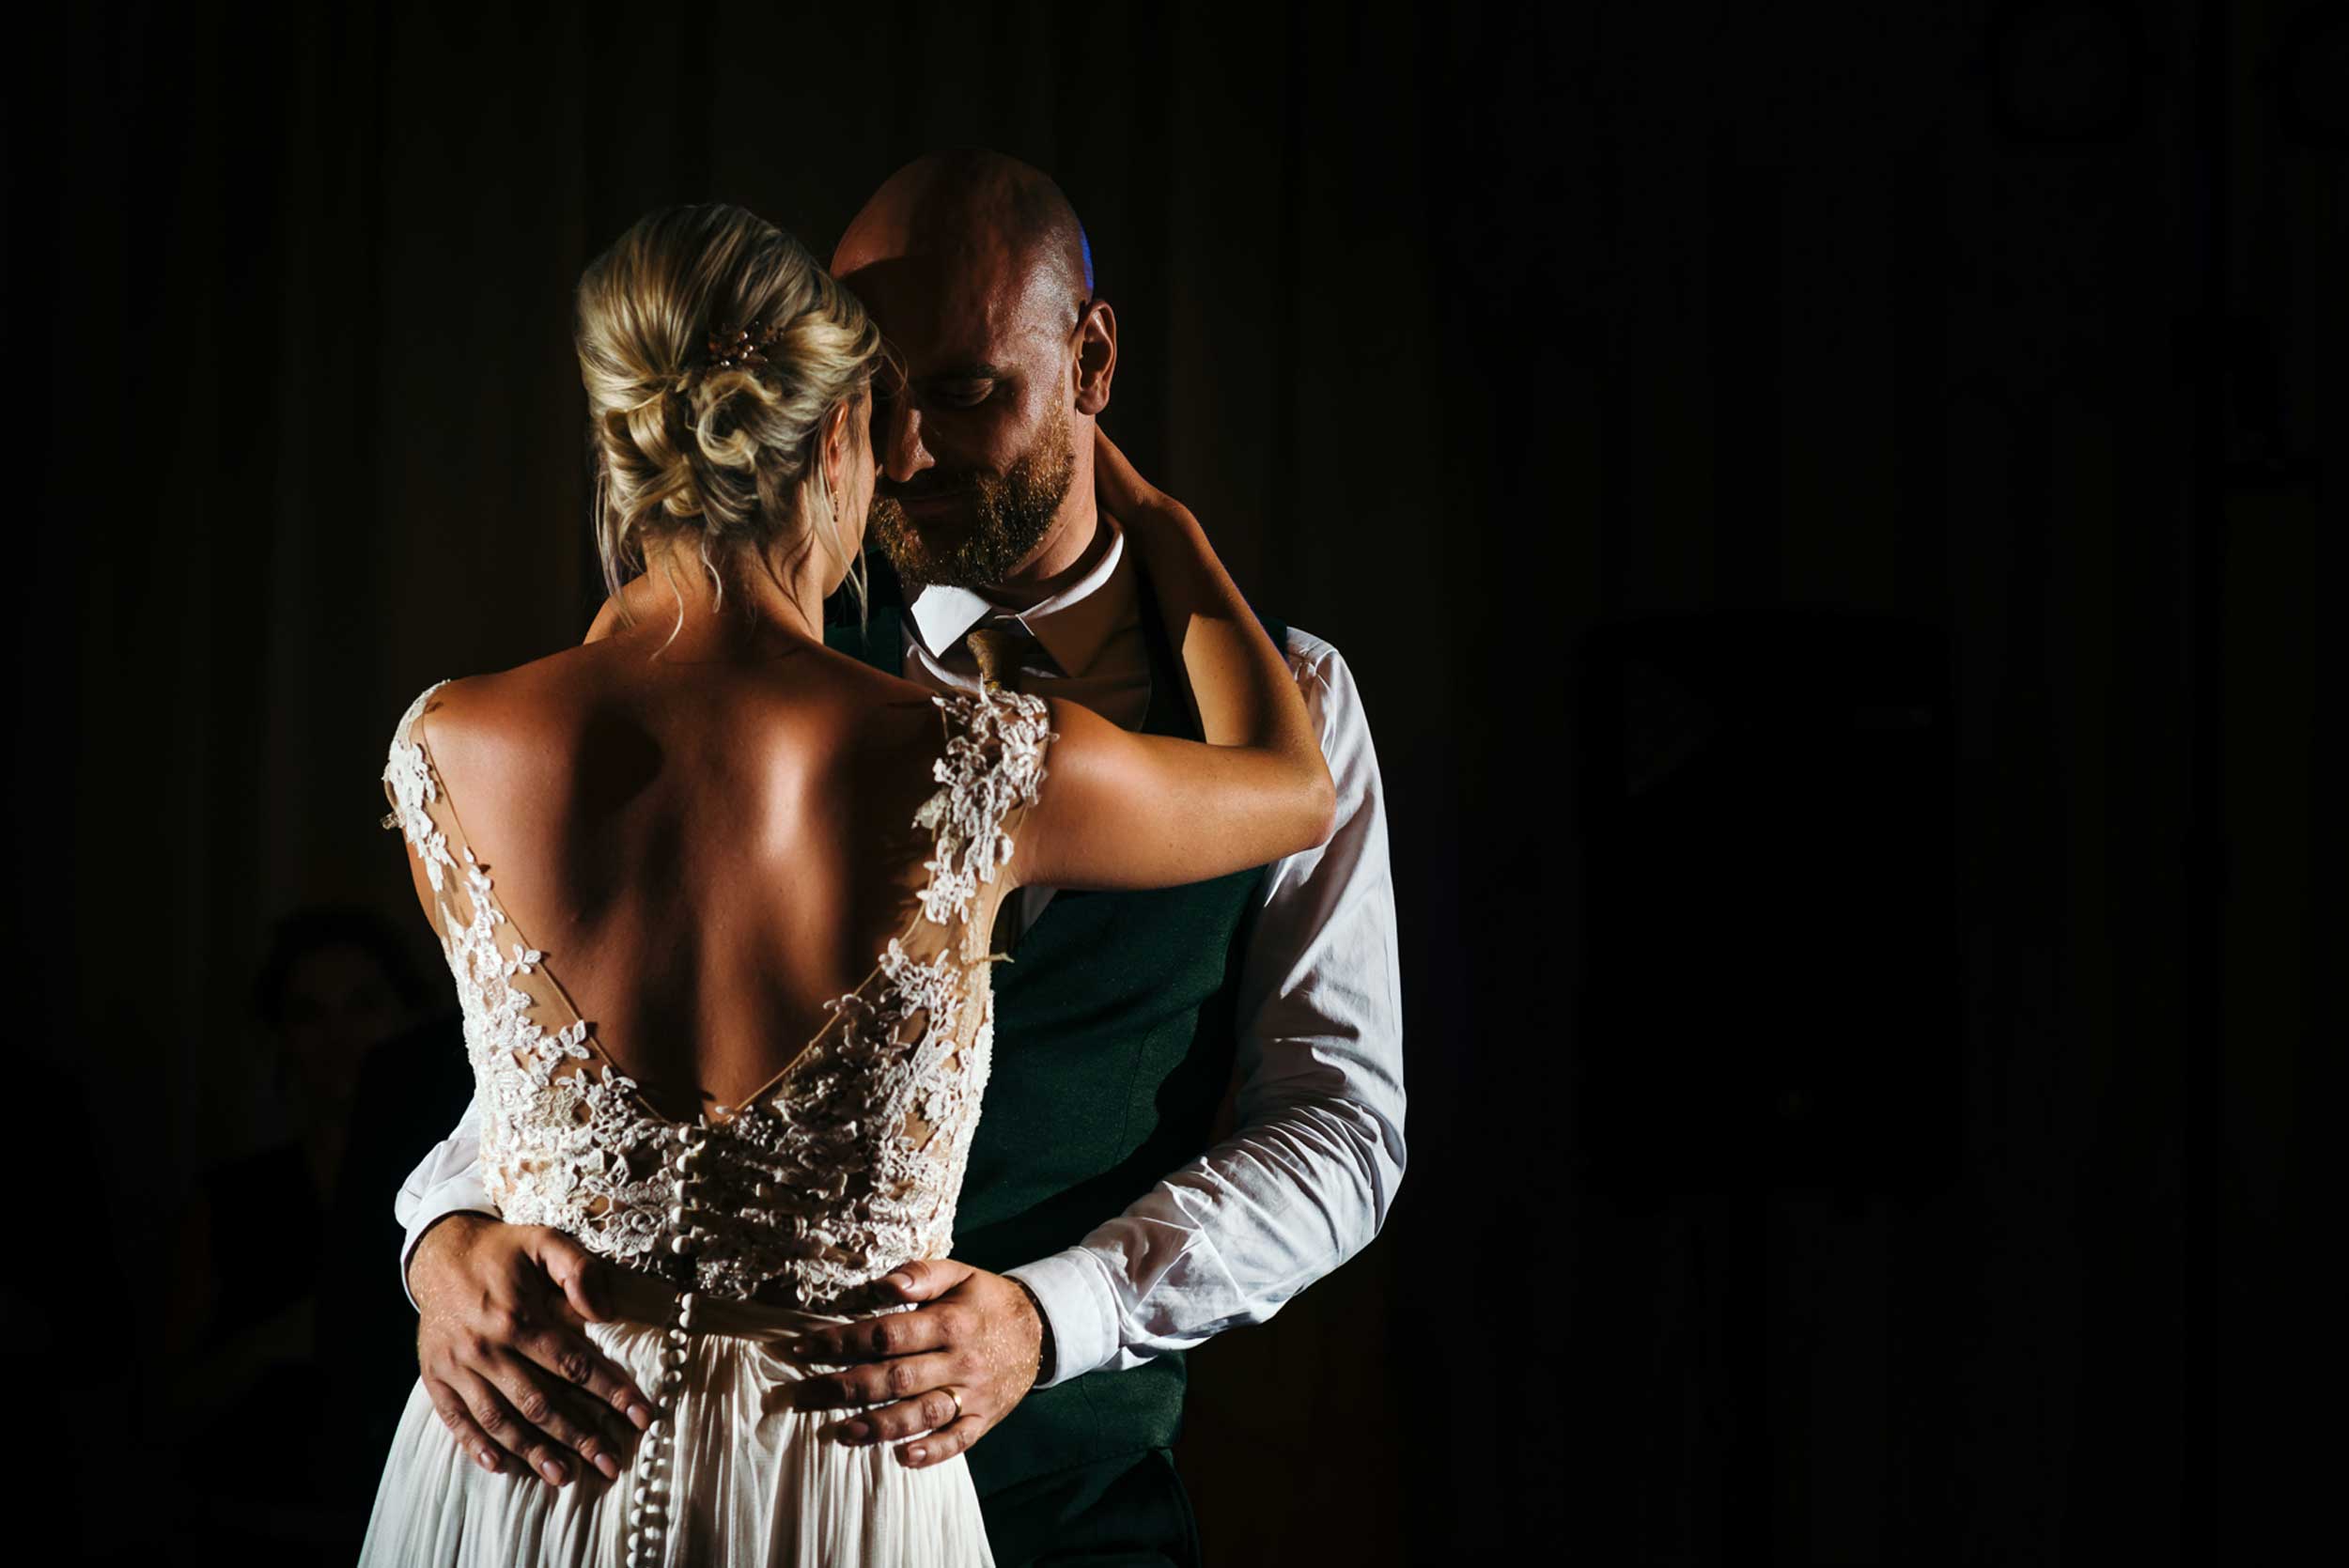 Een stralend bruidspaar betovert de dansvloer tijdens hun openingsdans. Het bruidspaar licht op tegen een sfeervolle, donkere achtergrond, waar het gebruik van flitslicht diepte en structuur toevoegt aan deze magische momentopname.